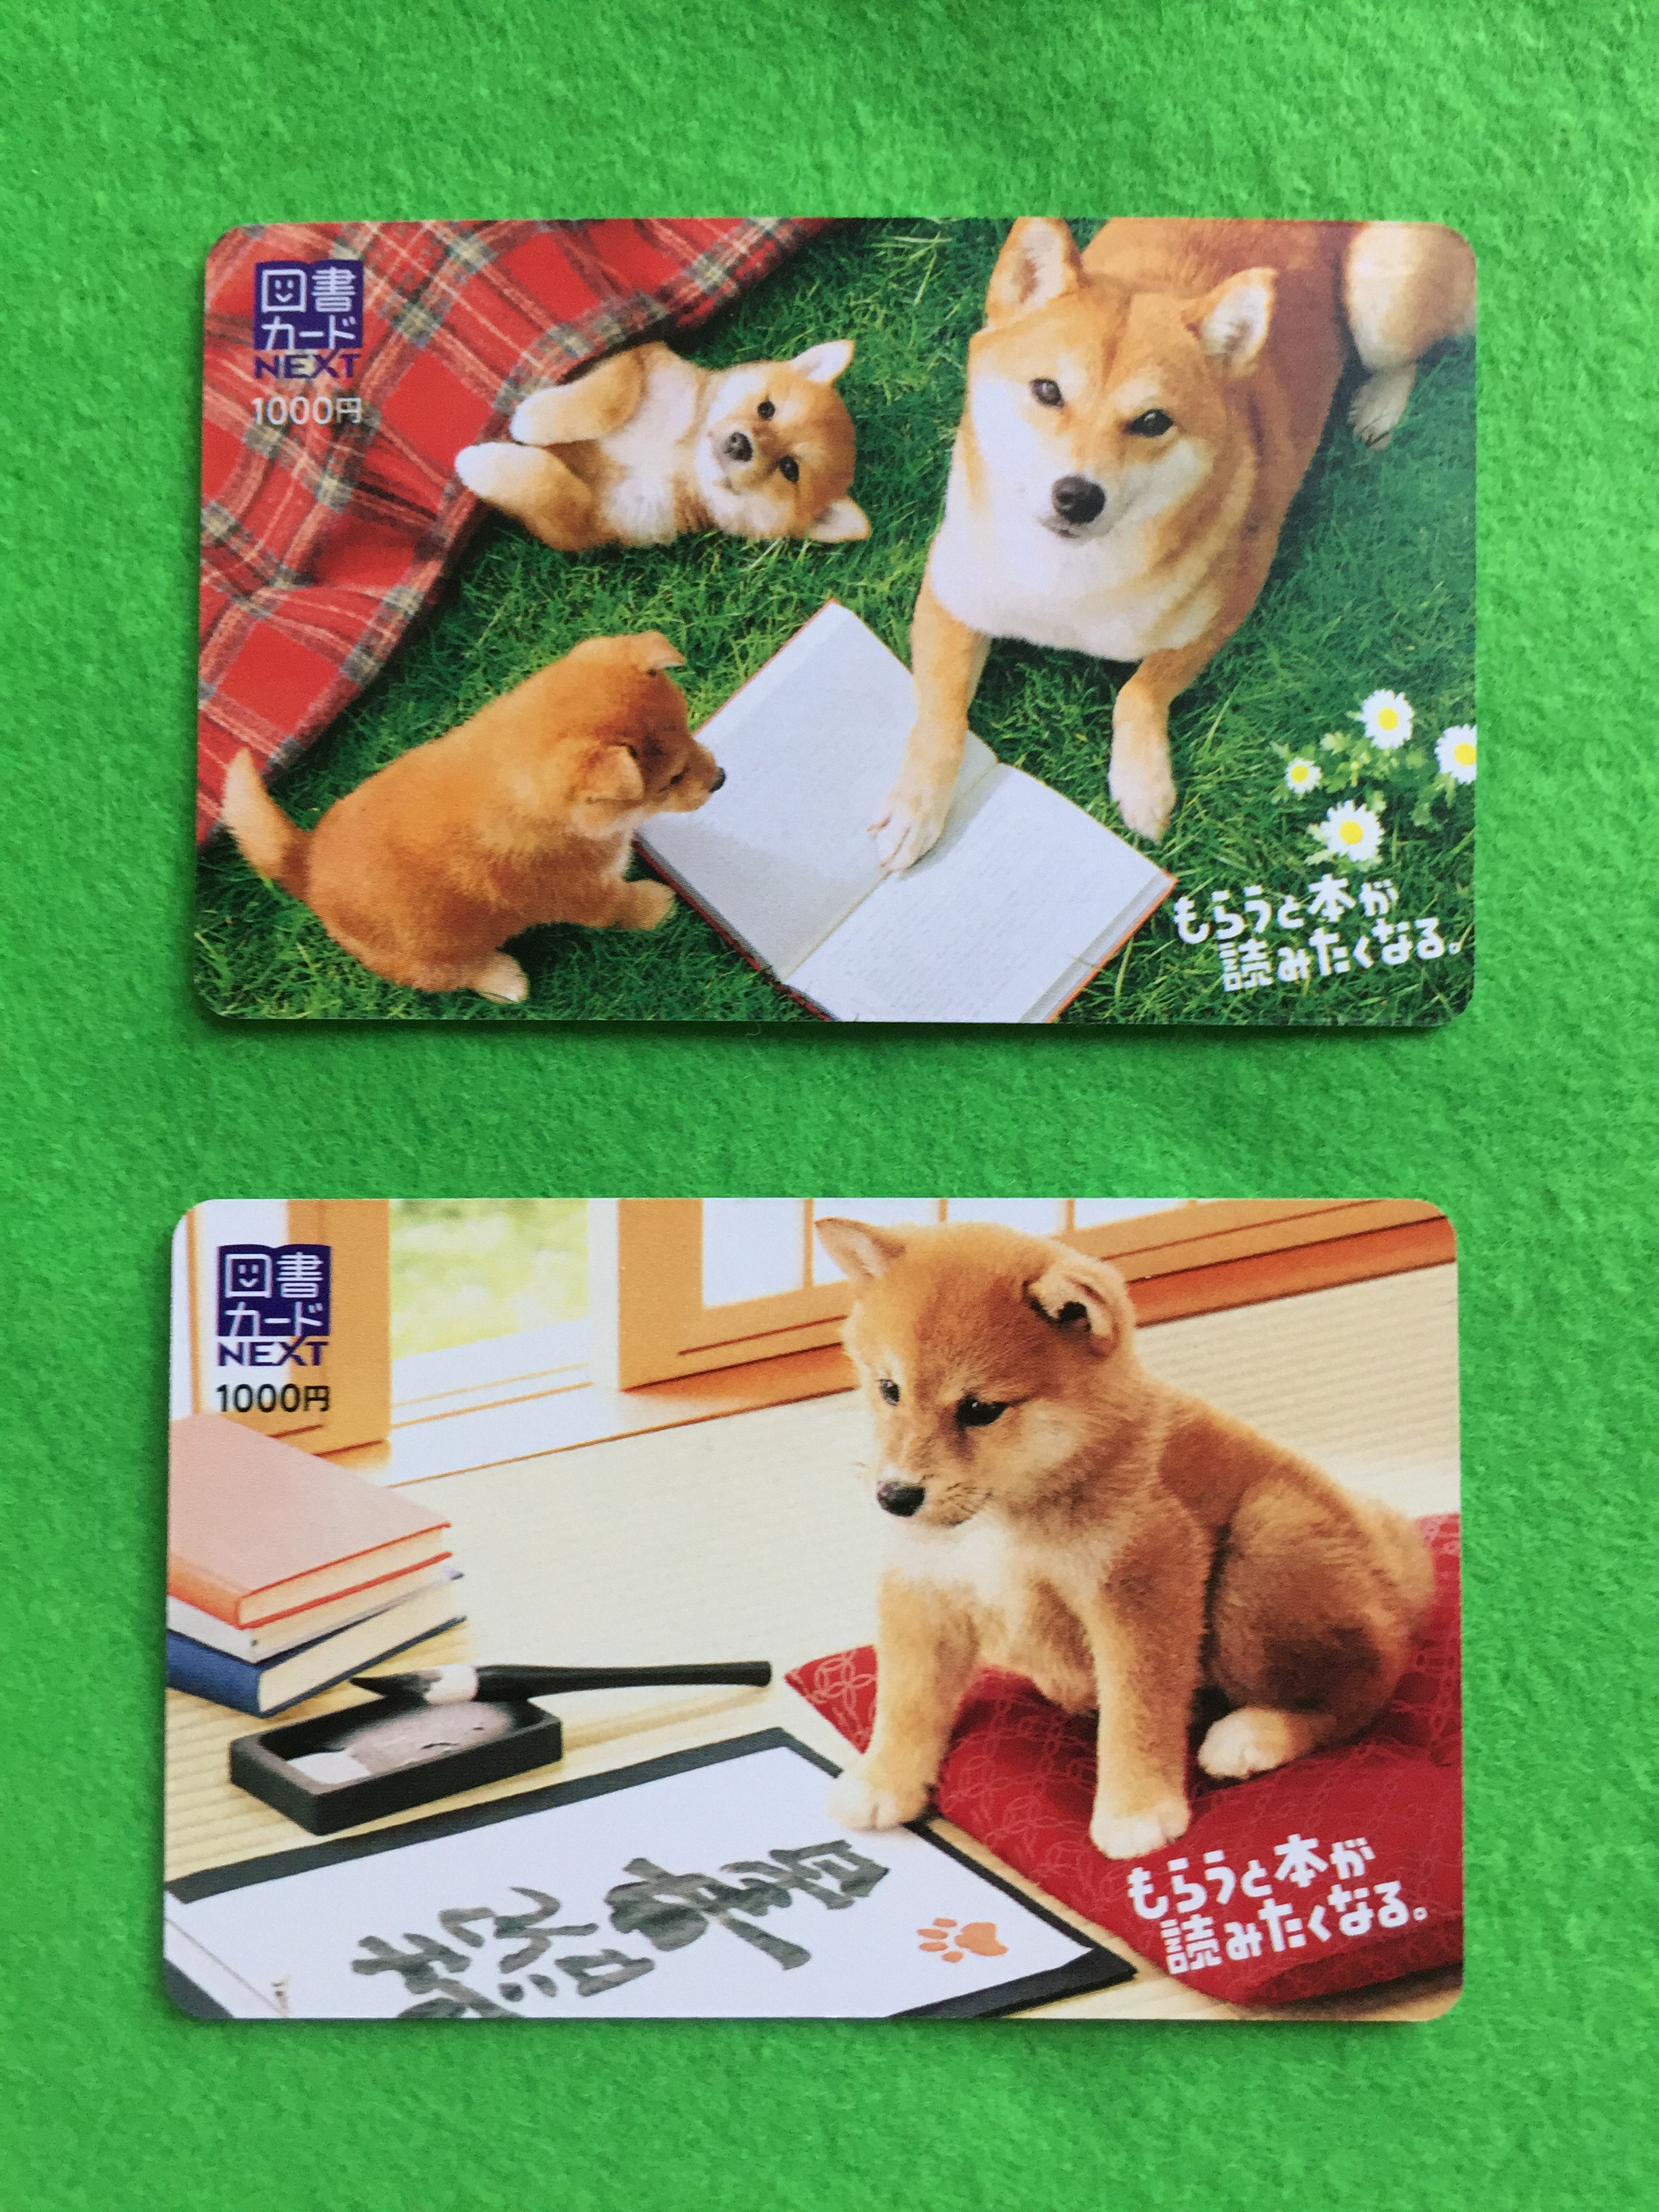 今年も 柴犬 図書カード発売されました 本と文具 布施書店